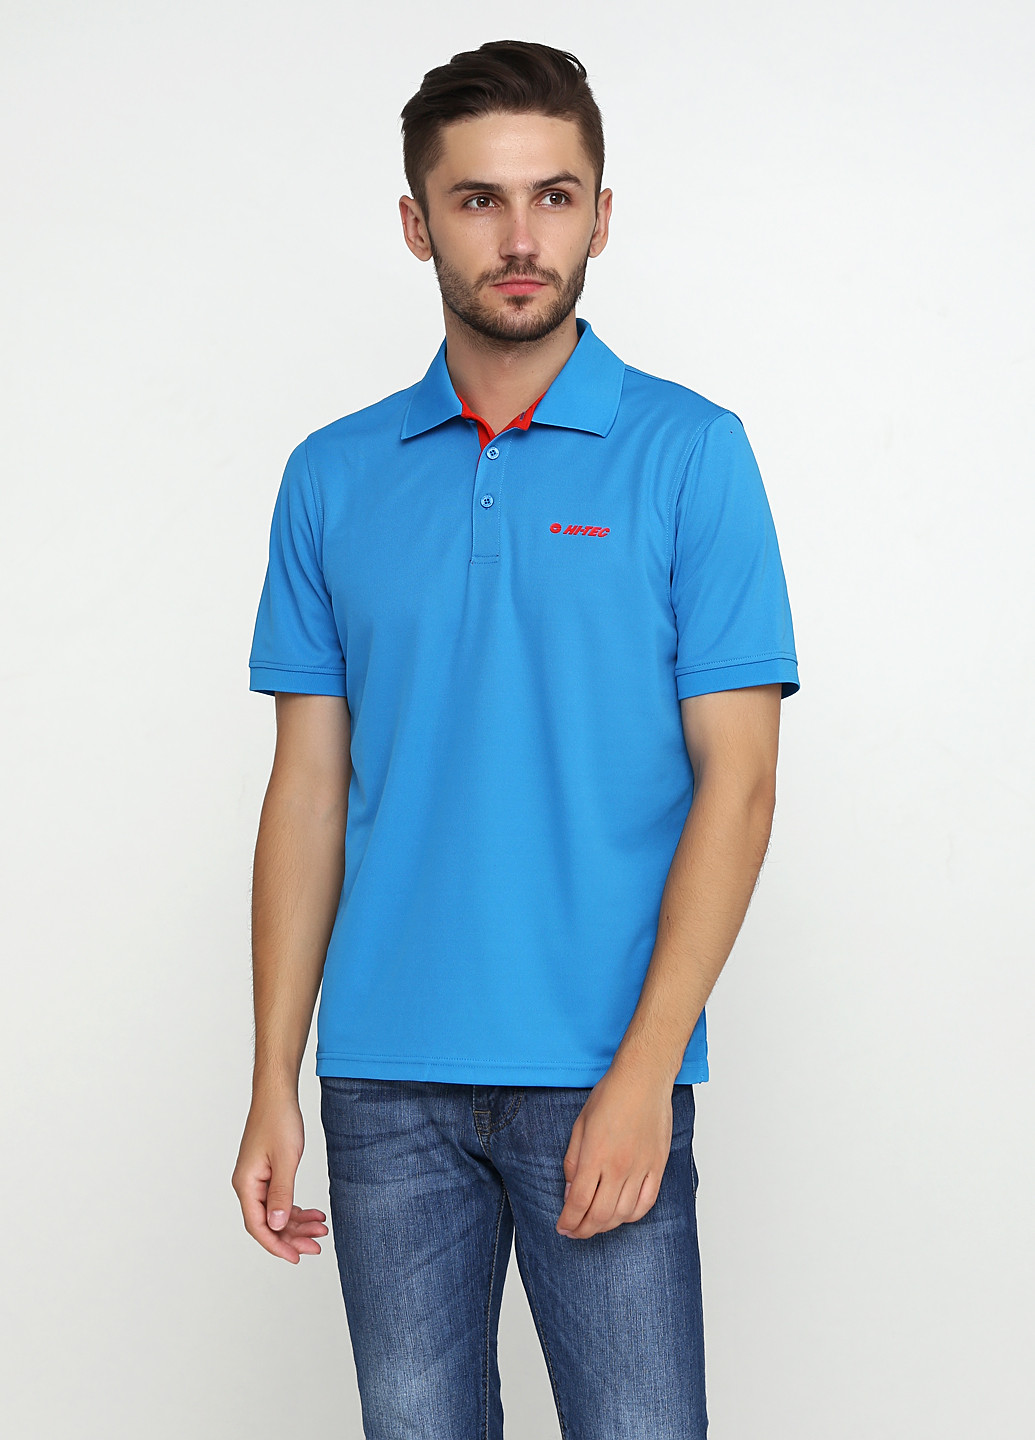 Голубой футболка-поло для мужчин Hi-Tec с надписью